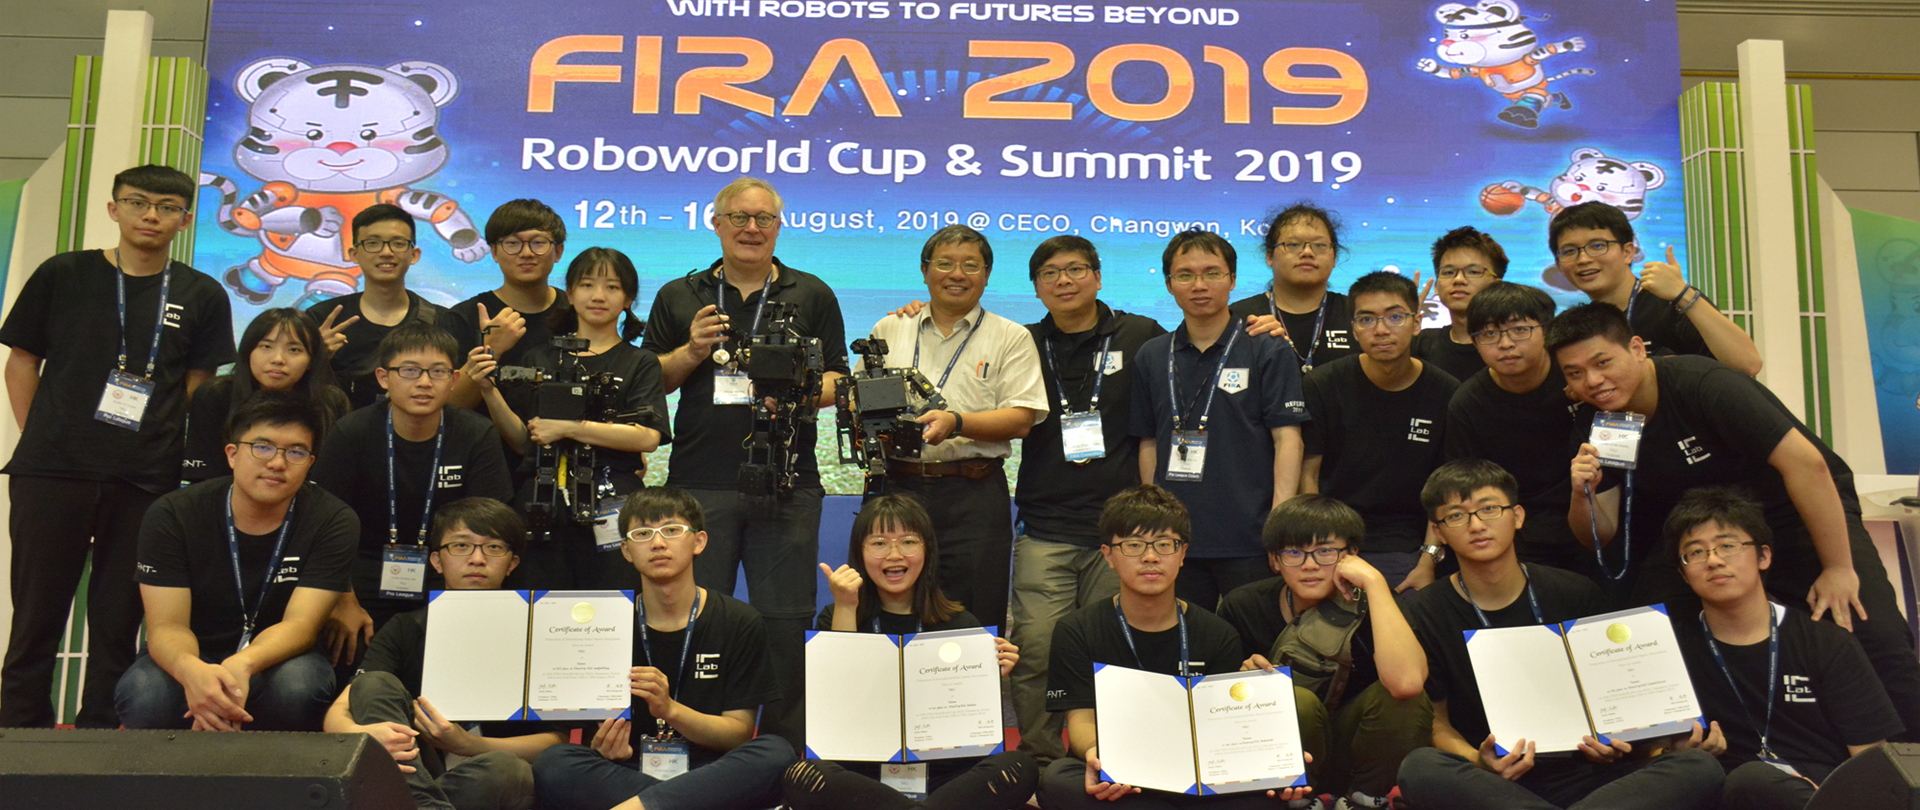 FIRA世界盃機器人比賽 2019, Korea